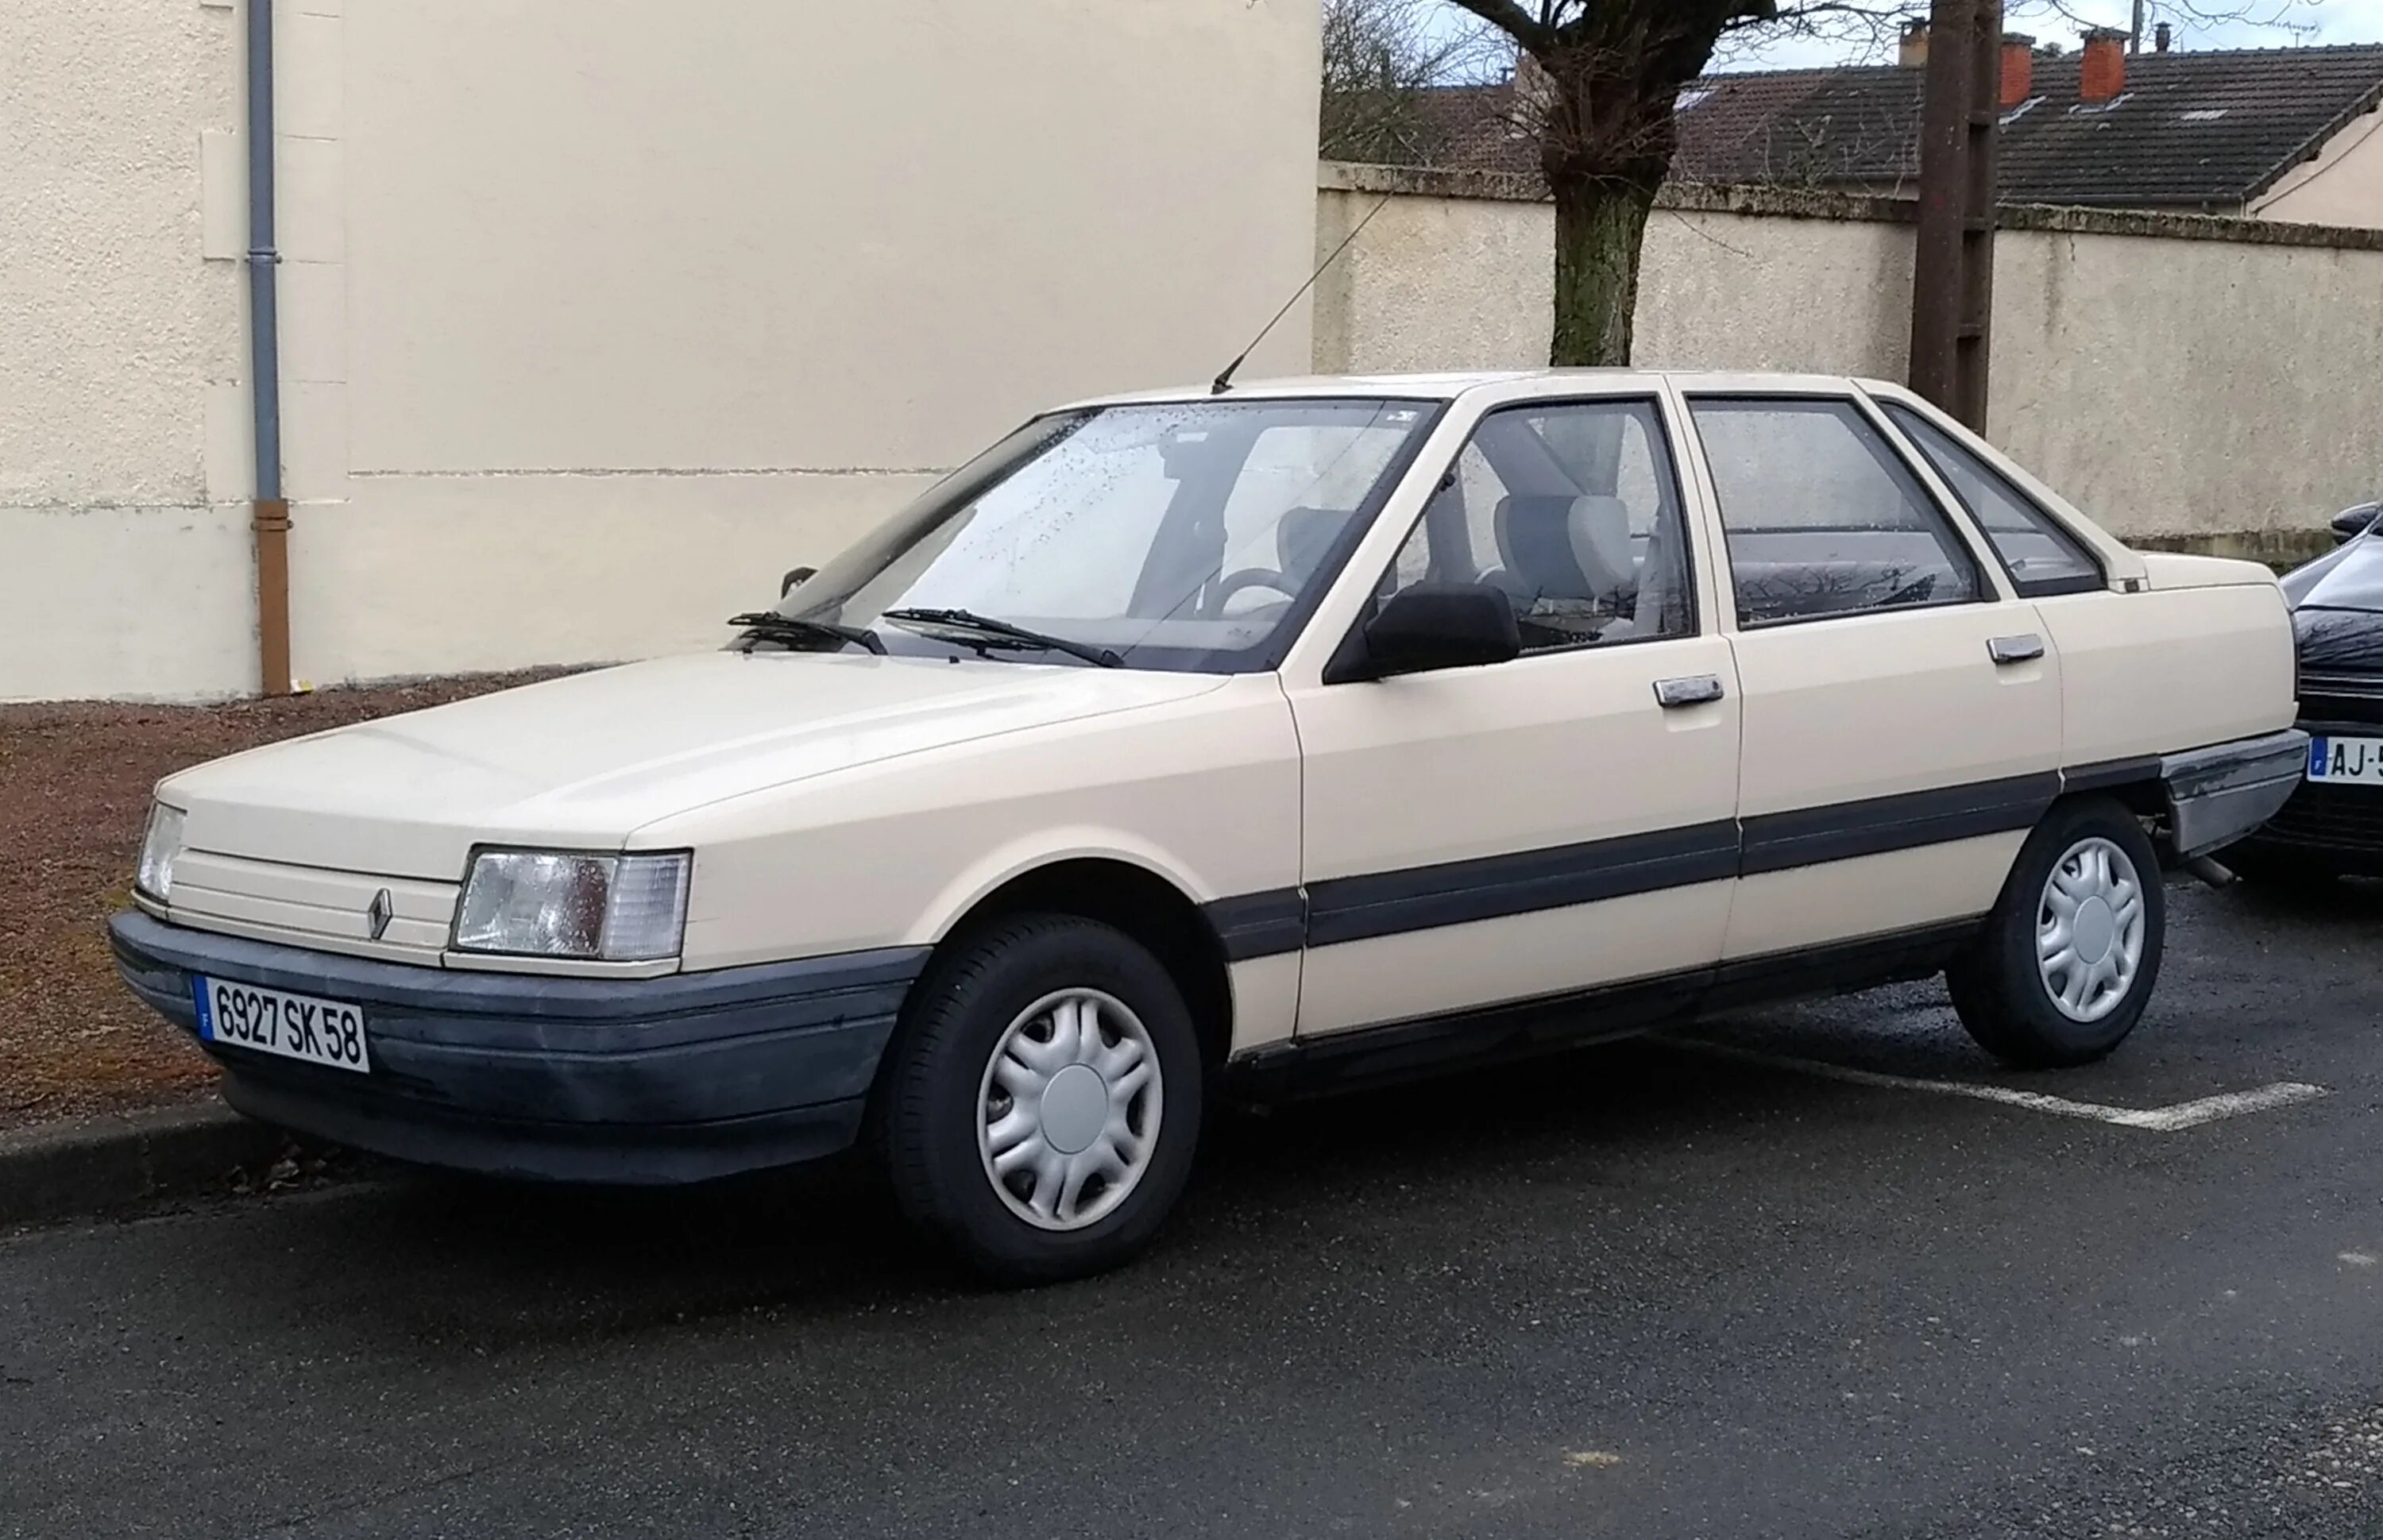 Рено 21 год. Renault 21. Рено 21 GTS. Renault 21 1986. Renault 21 седан.